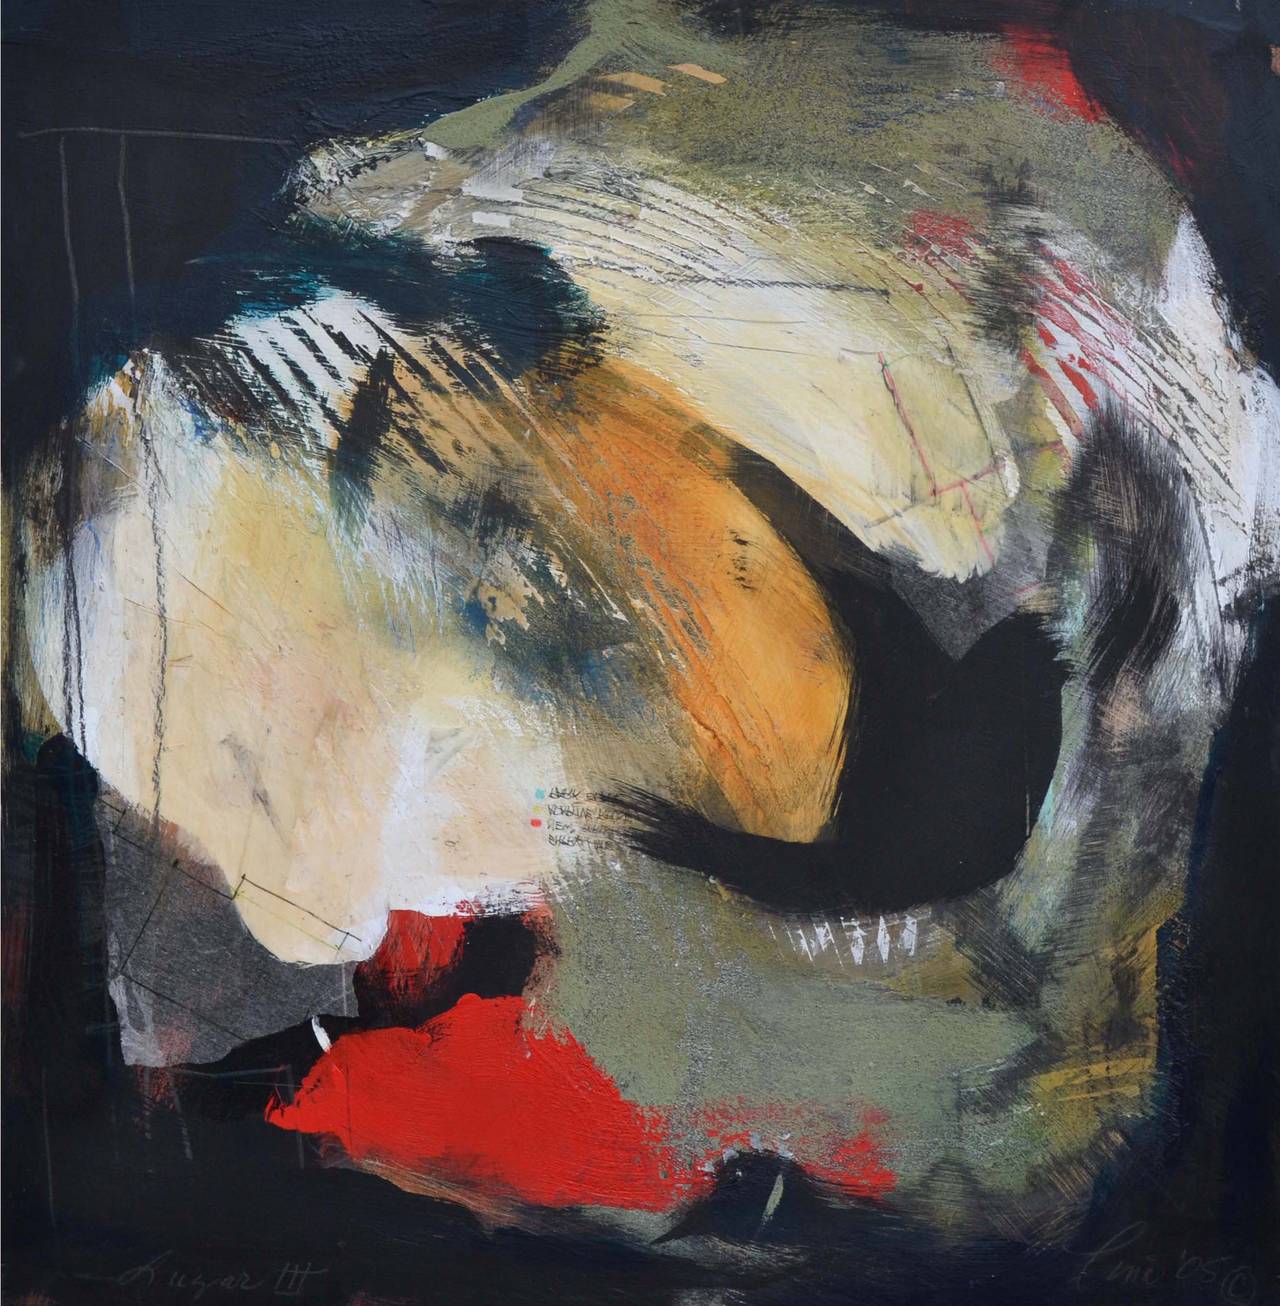 Hübsches abstraktes Werk mit dem Titel "Luzar III" von Tina Fuentes. Gemischte Medien mit Ölfarbe  und Seidenpapier auf Holzplatte. Unten und verso betitelt, signiert und datiert.  Bildgröße: 24 "H x 24 "B.

Tina Fuentes (geboren 1949) ist eine